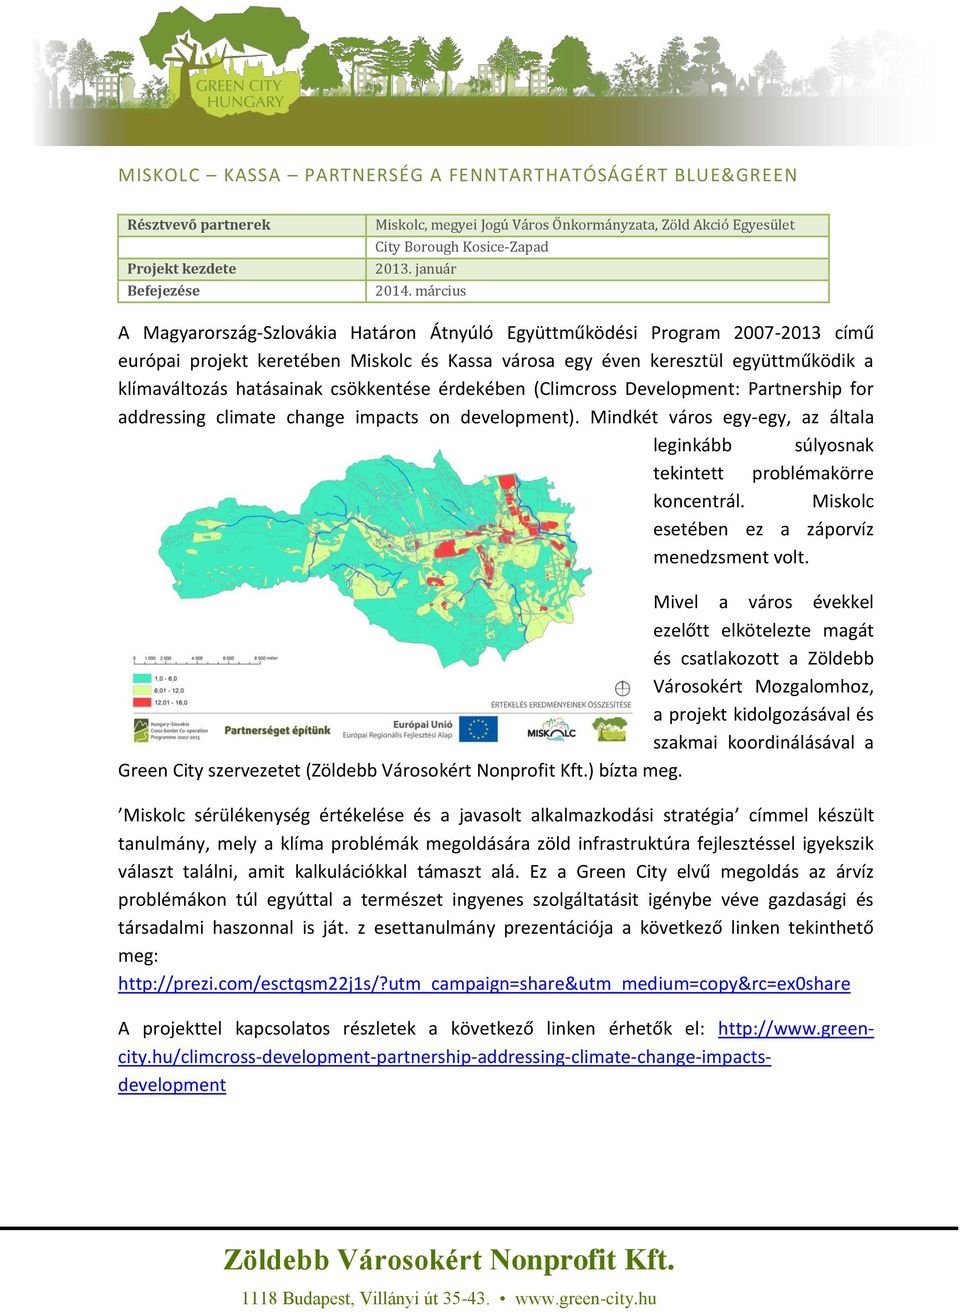 március A Magyarország-Szlovákia Határon Átnyúló Együttműködési Program 2007-2013 című európai projekt keretében Miskolc és Kassa városa egy éven keresztül együttműködik a klímaváltozás hatásainak